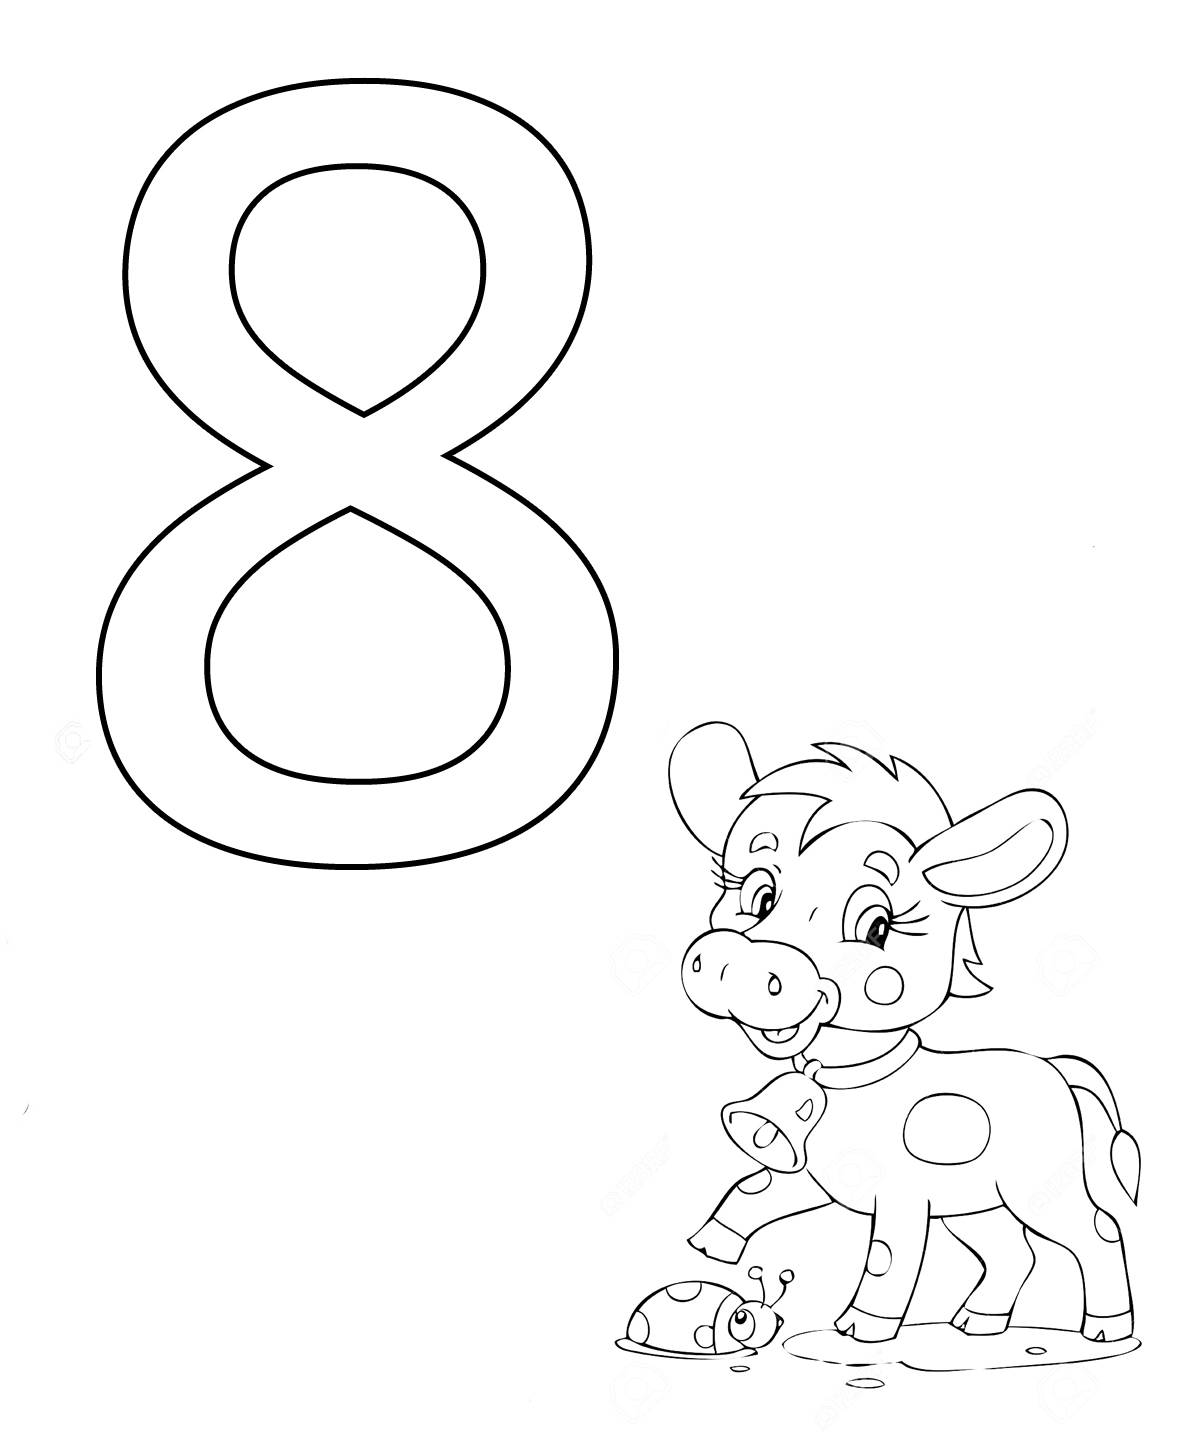 Восьмерка раскраска. Раскраска 8. Цифра 8 раскраска для детей. Цифра 8 для раскрашивания для детей.